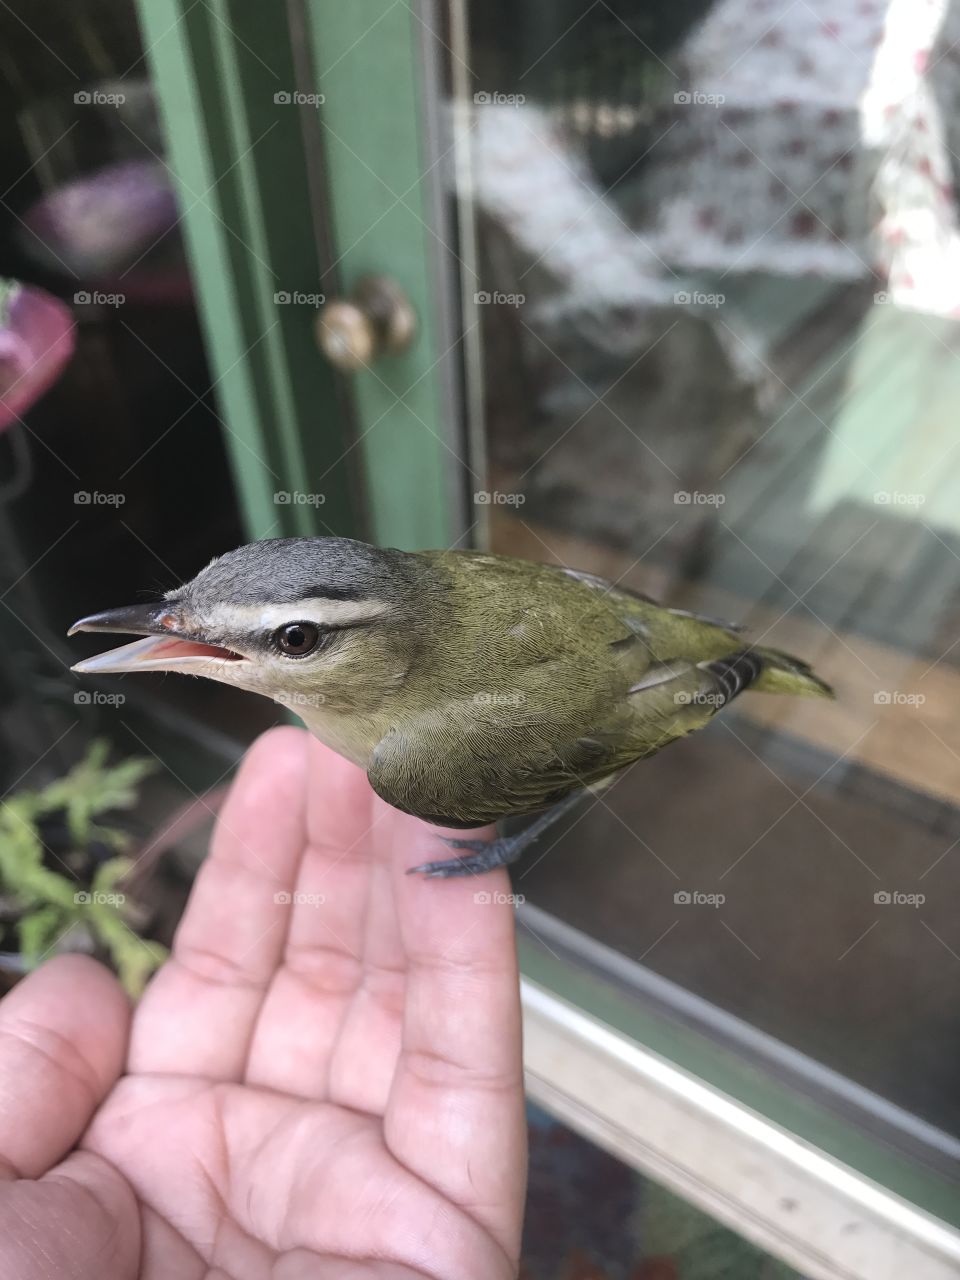 Poor birdie flew into the window. Got him feeling better and he flew away.